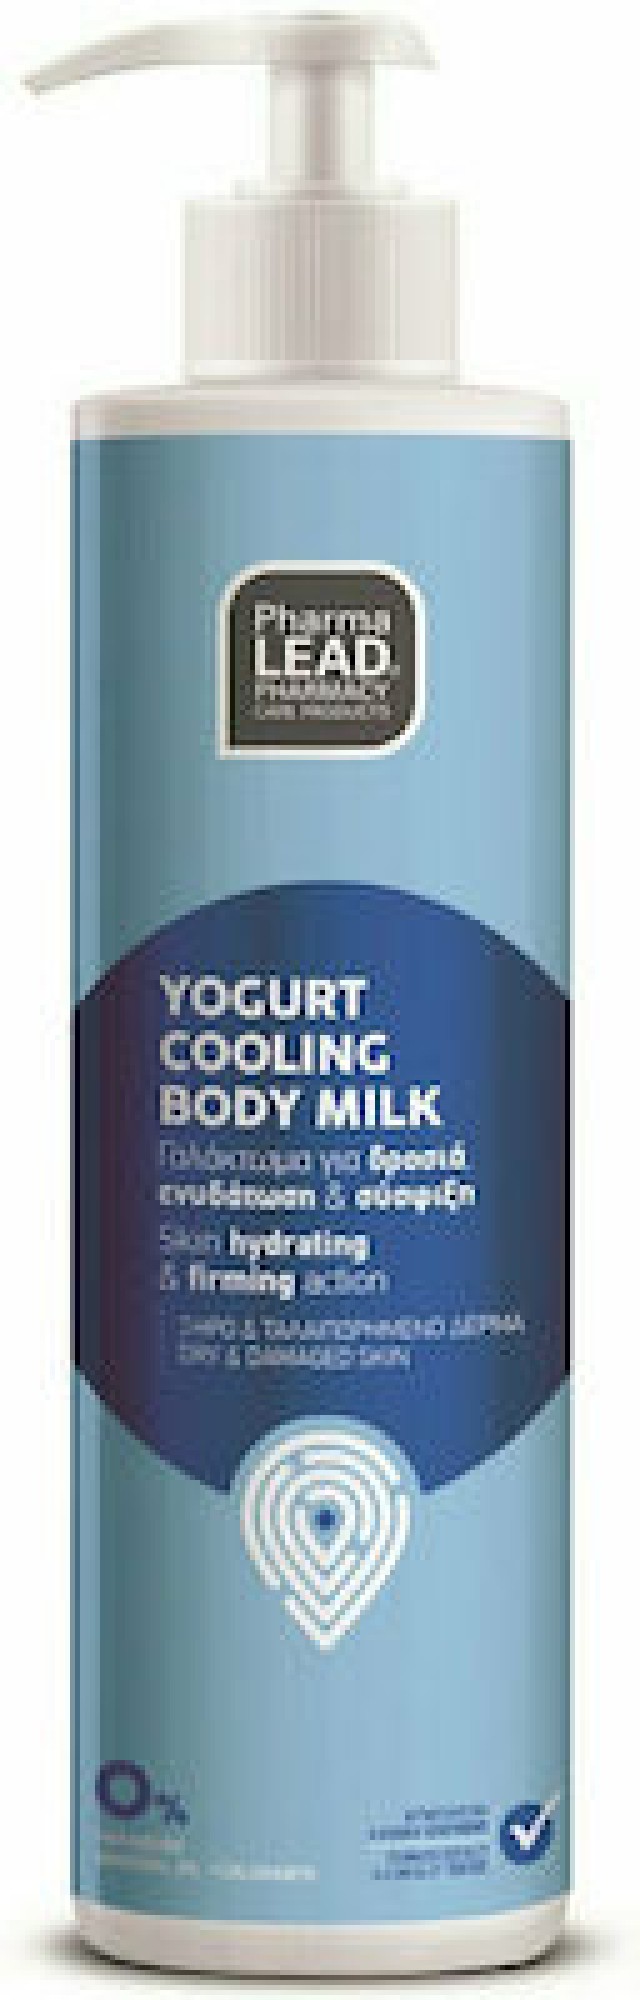 Pharmalead Yogurt Cooling Body Milk Ενυδατικό Γαλάκτωμα Σώματος, 250ml